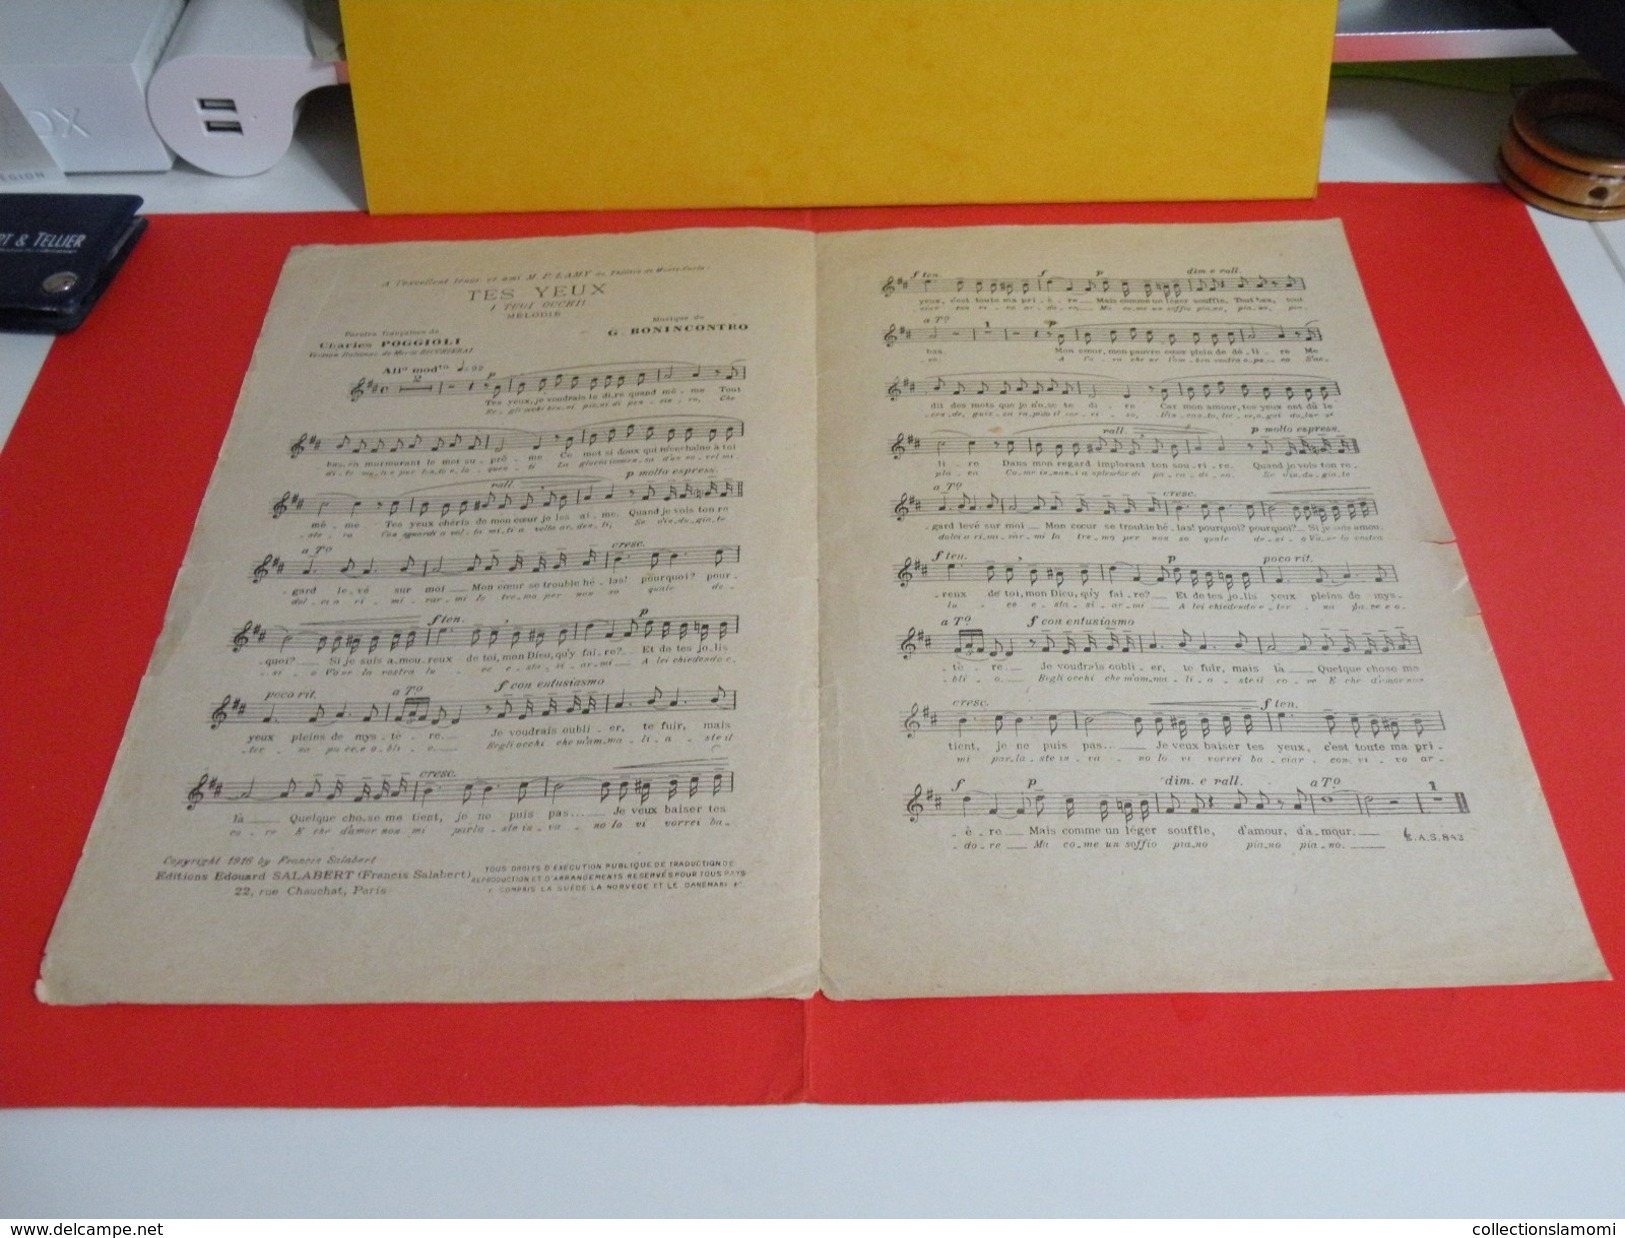 Musique & Partitions > Chansonniers Opéra > Tes Yeux -Paroles Charles Poggioli -Musique G. Bonincontro 1916 - Opern